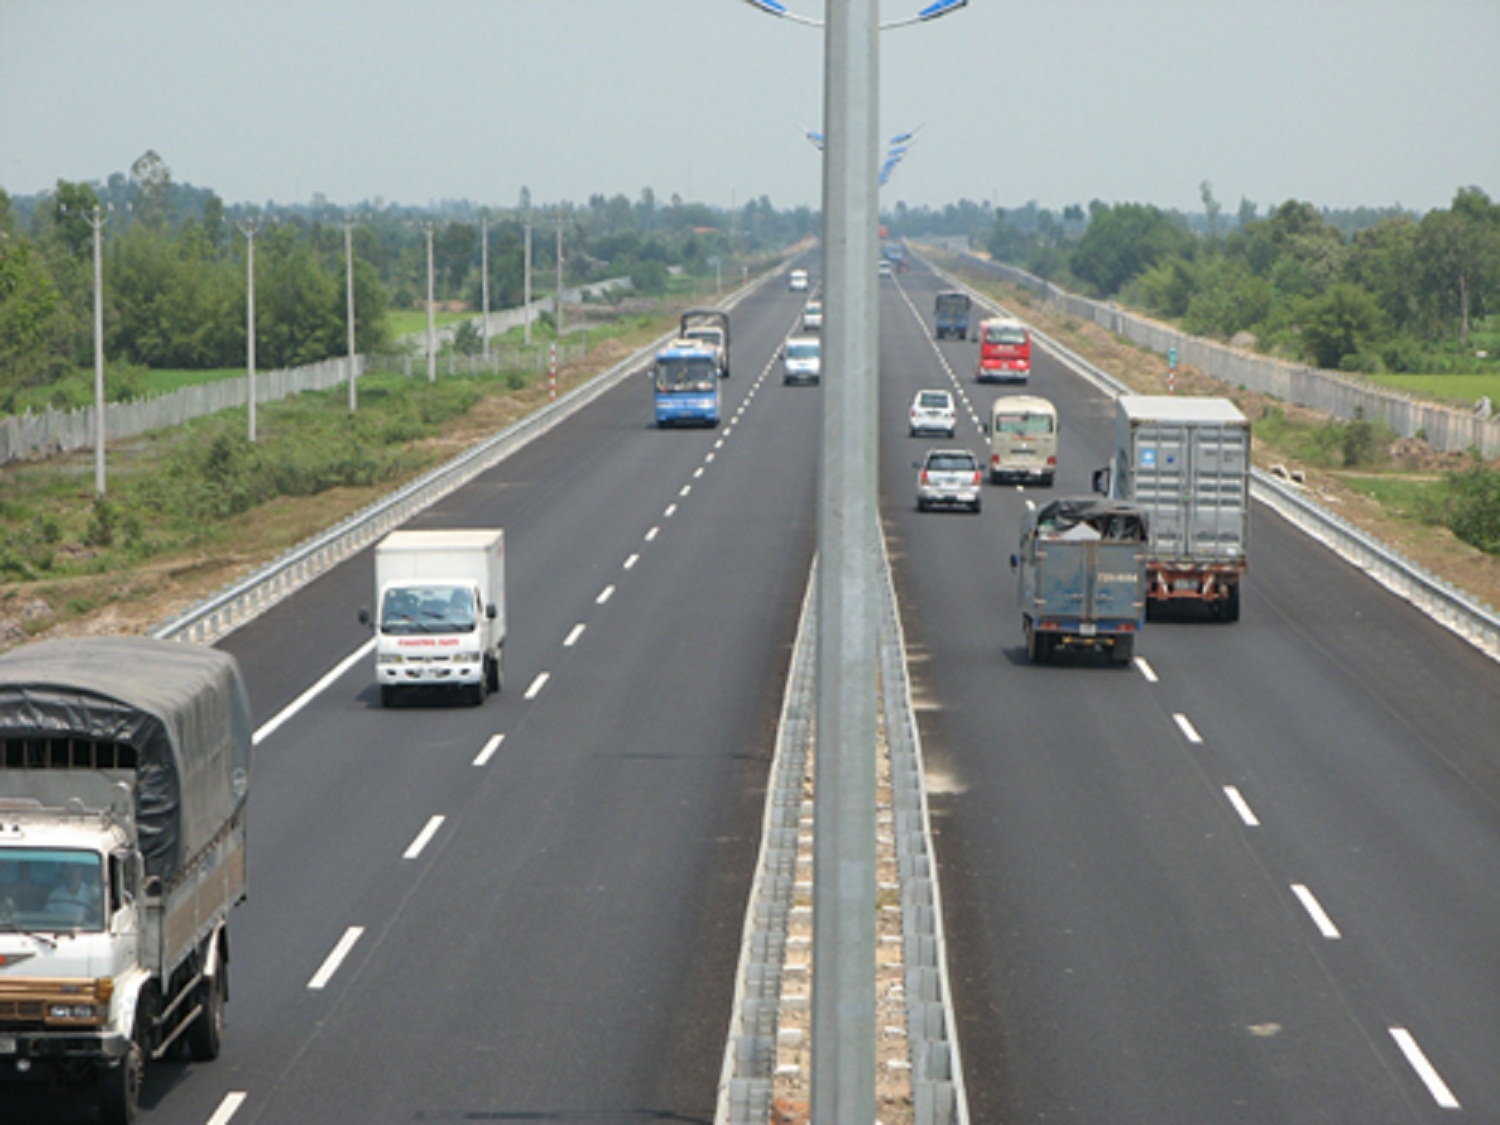 Cao tốc Hà Nội - Hải Phòng sẽ tăng phí trong thời gian tới cùng với quốc lộ cũ 5A